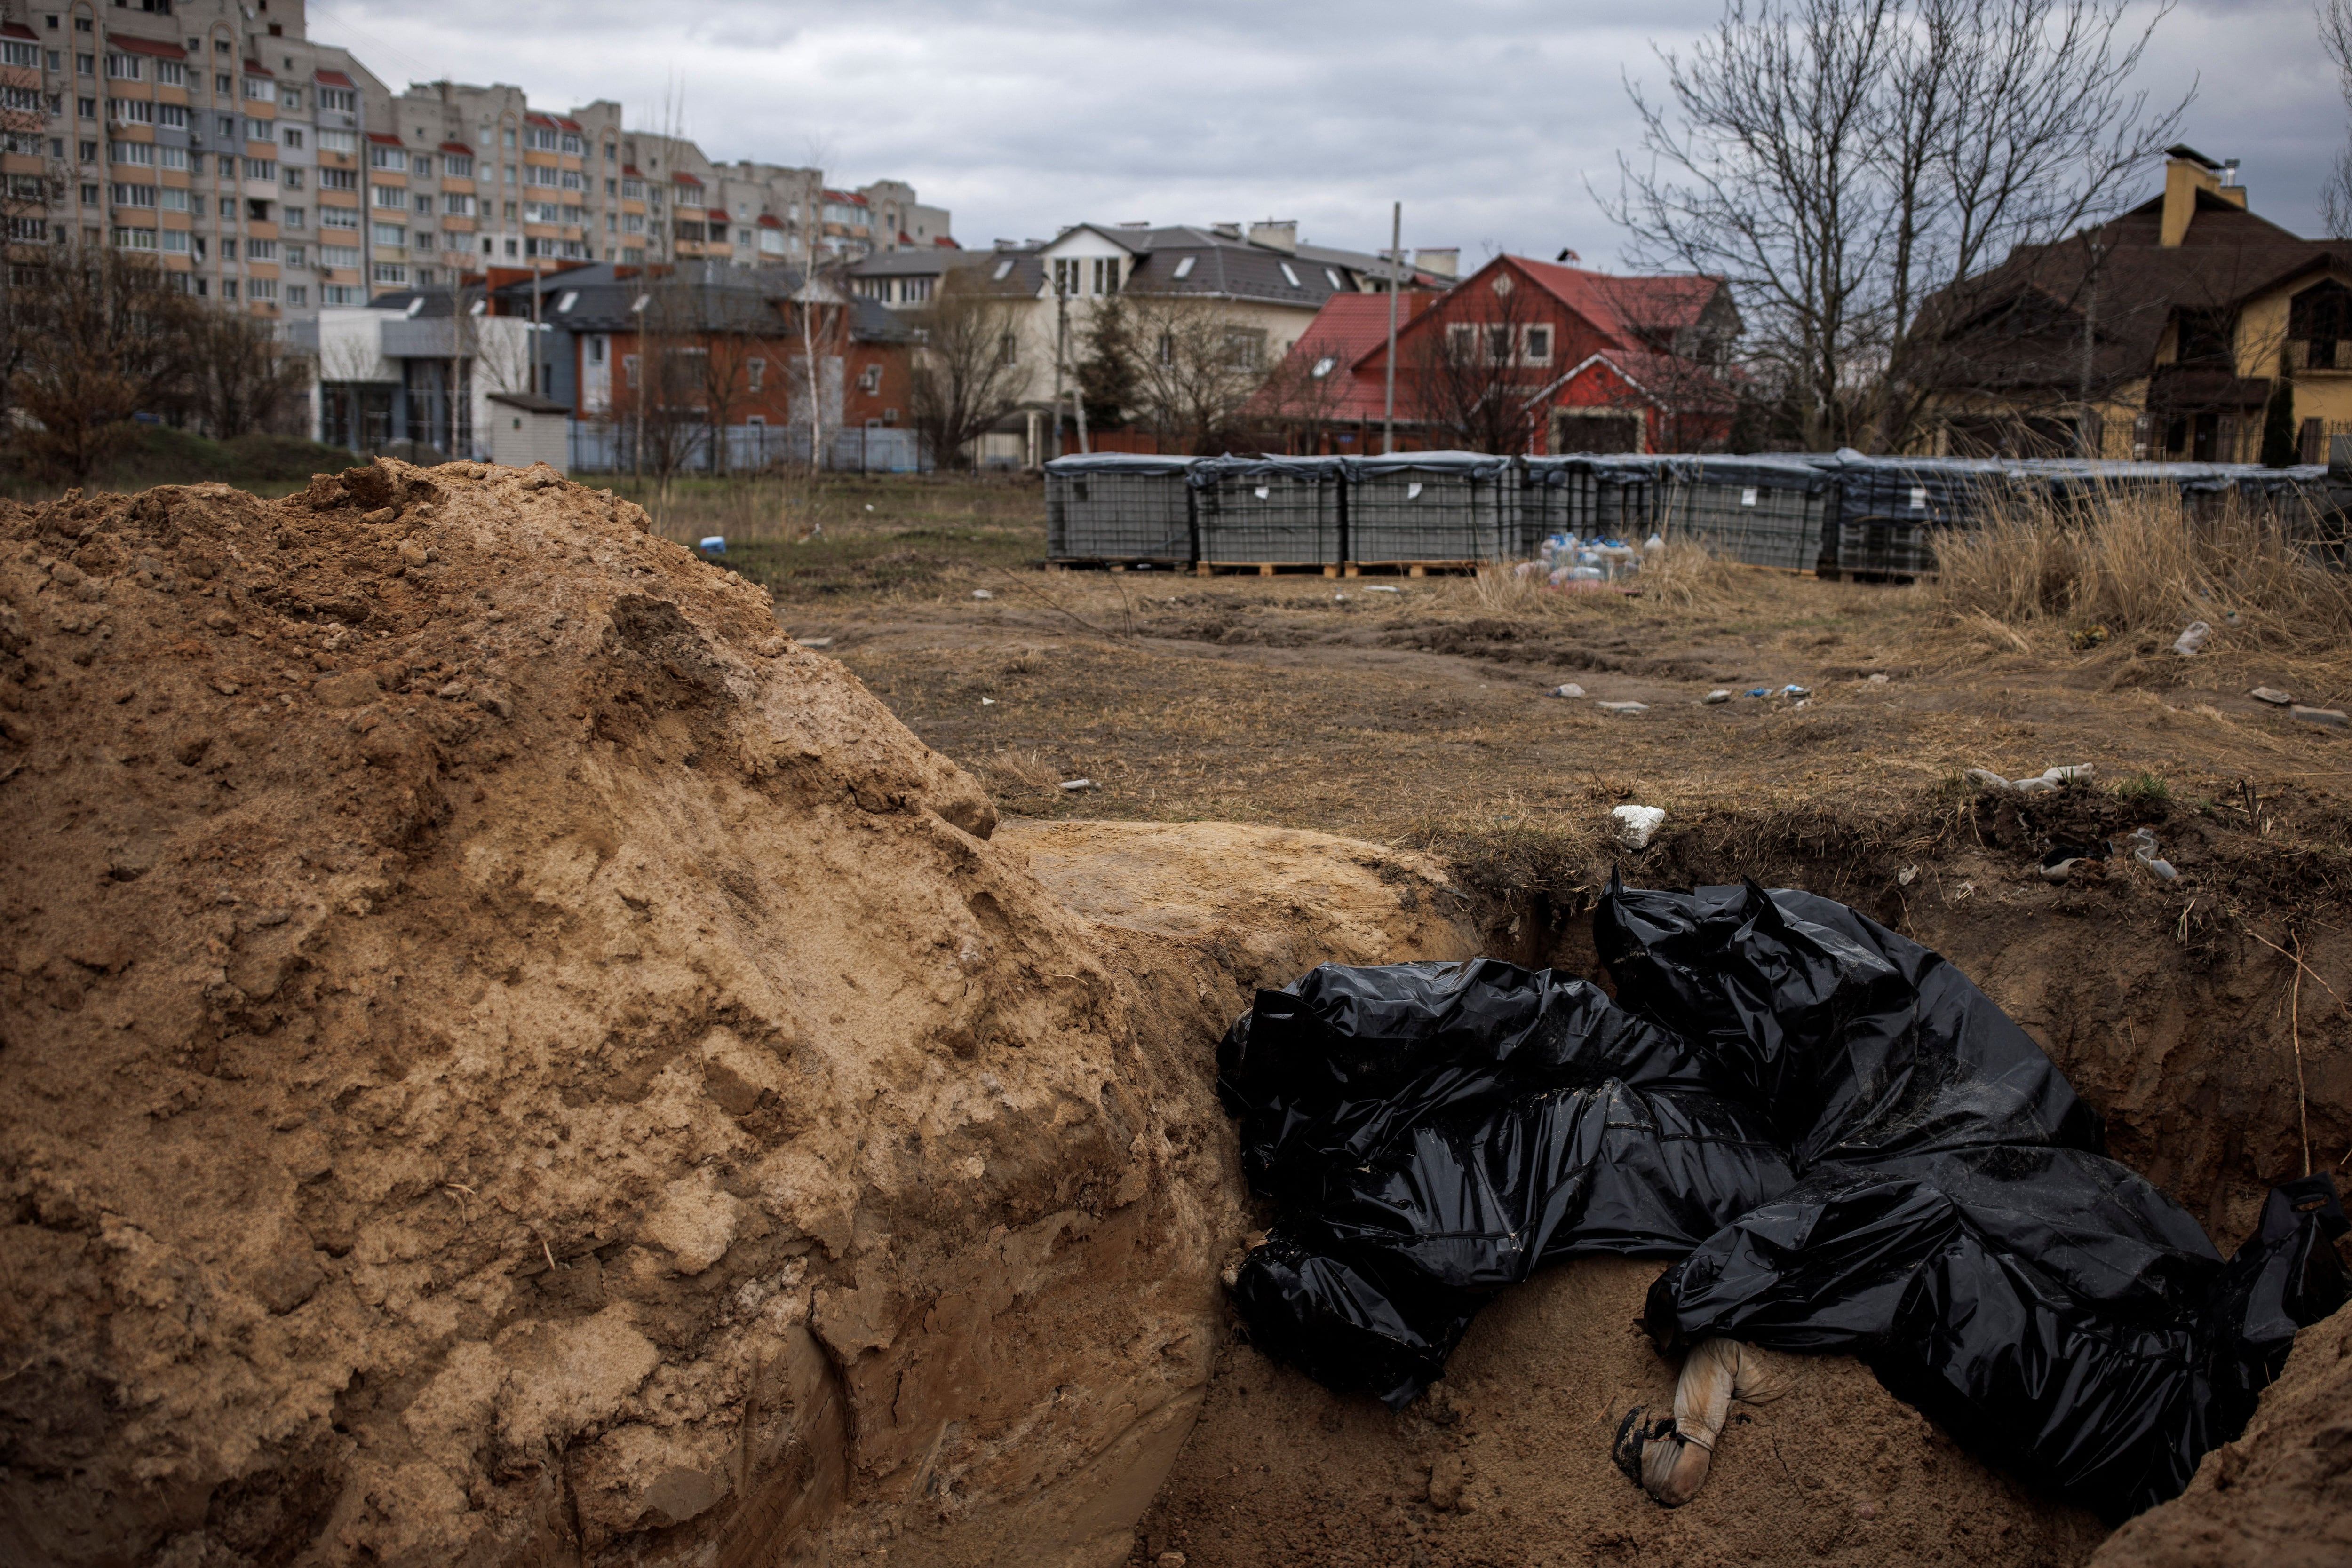 Los cuerpos de civiles, que según los residentes fueron asesinados por soldados rusos, se ven en una fosa común, en medio de la invasión rusa de Ucrania, en Bucha, en la región de Kiev, Ucrania, 6 de abril de 2022. REUTERS/Alkis Konstantinidis